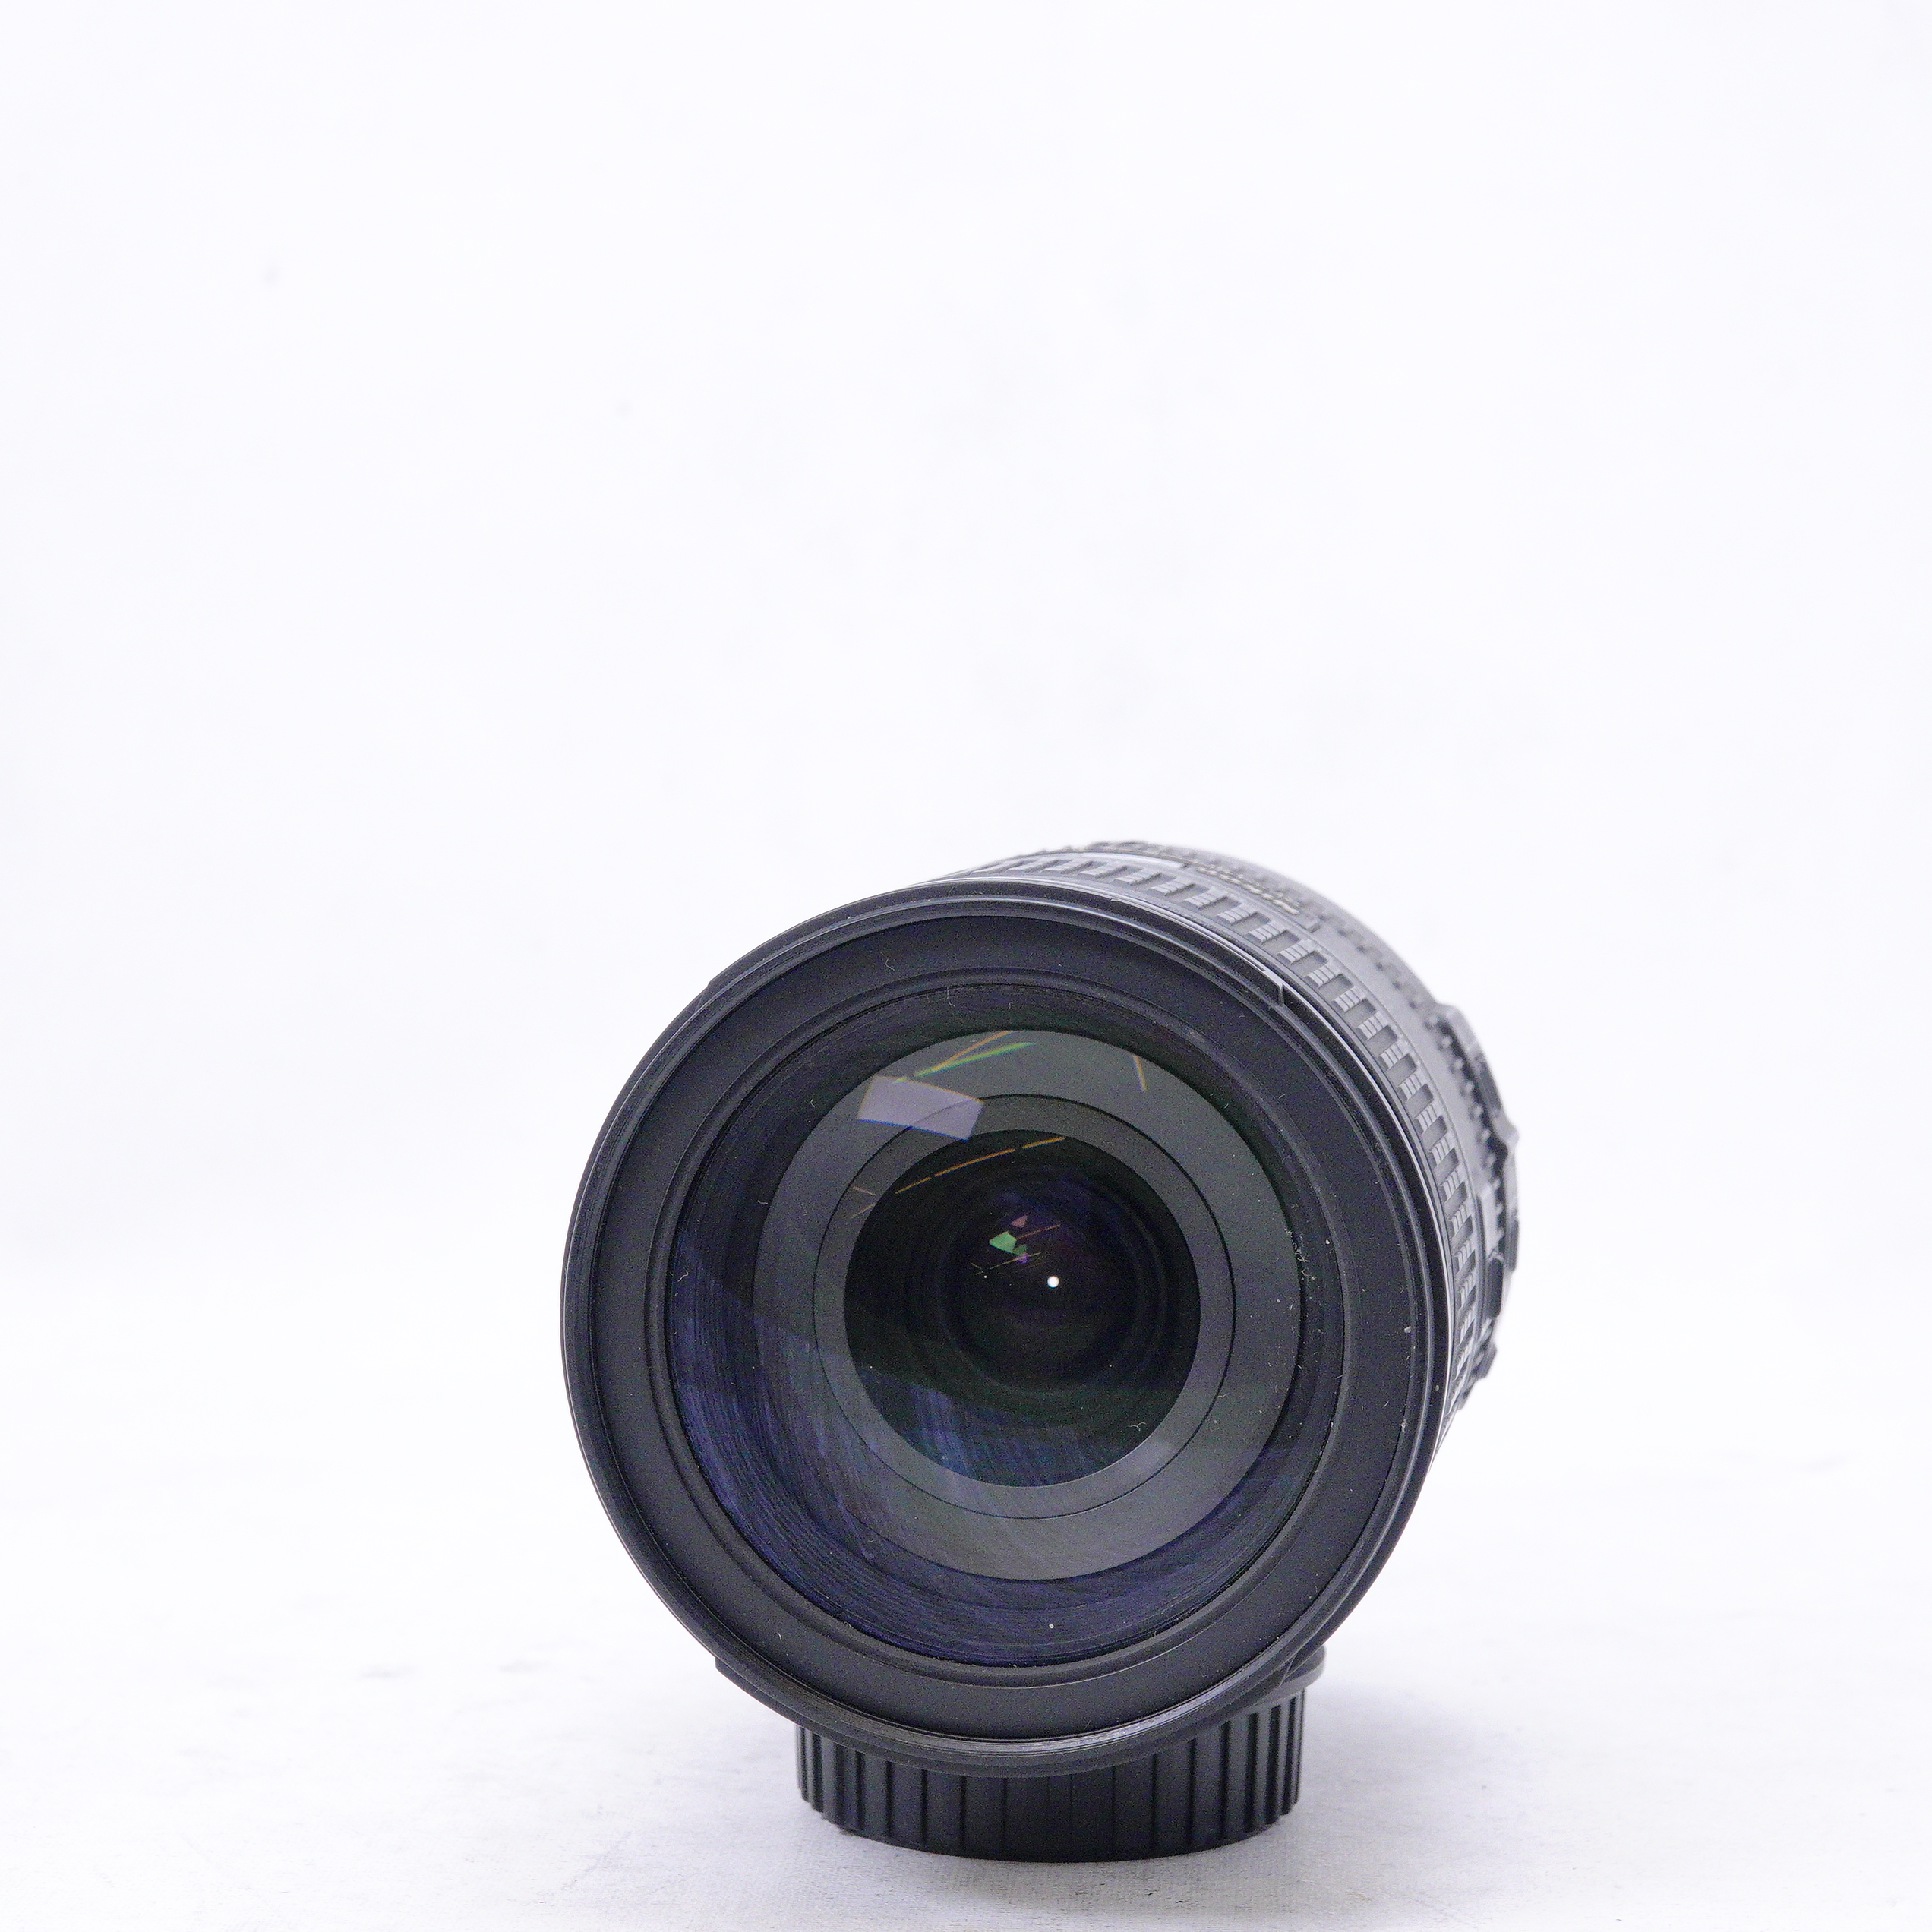 Nikon AF-S NIKKOR 28-300mm f3.5 5.6 G ED VR - Usado